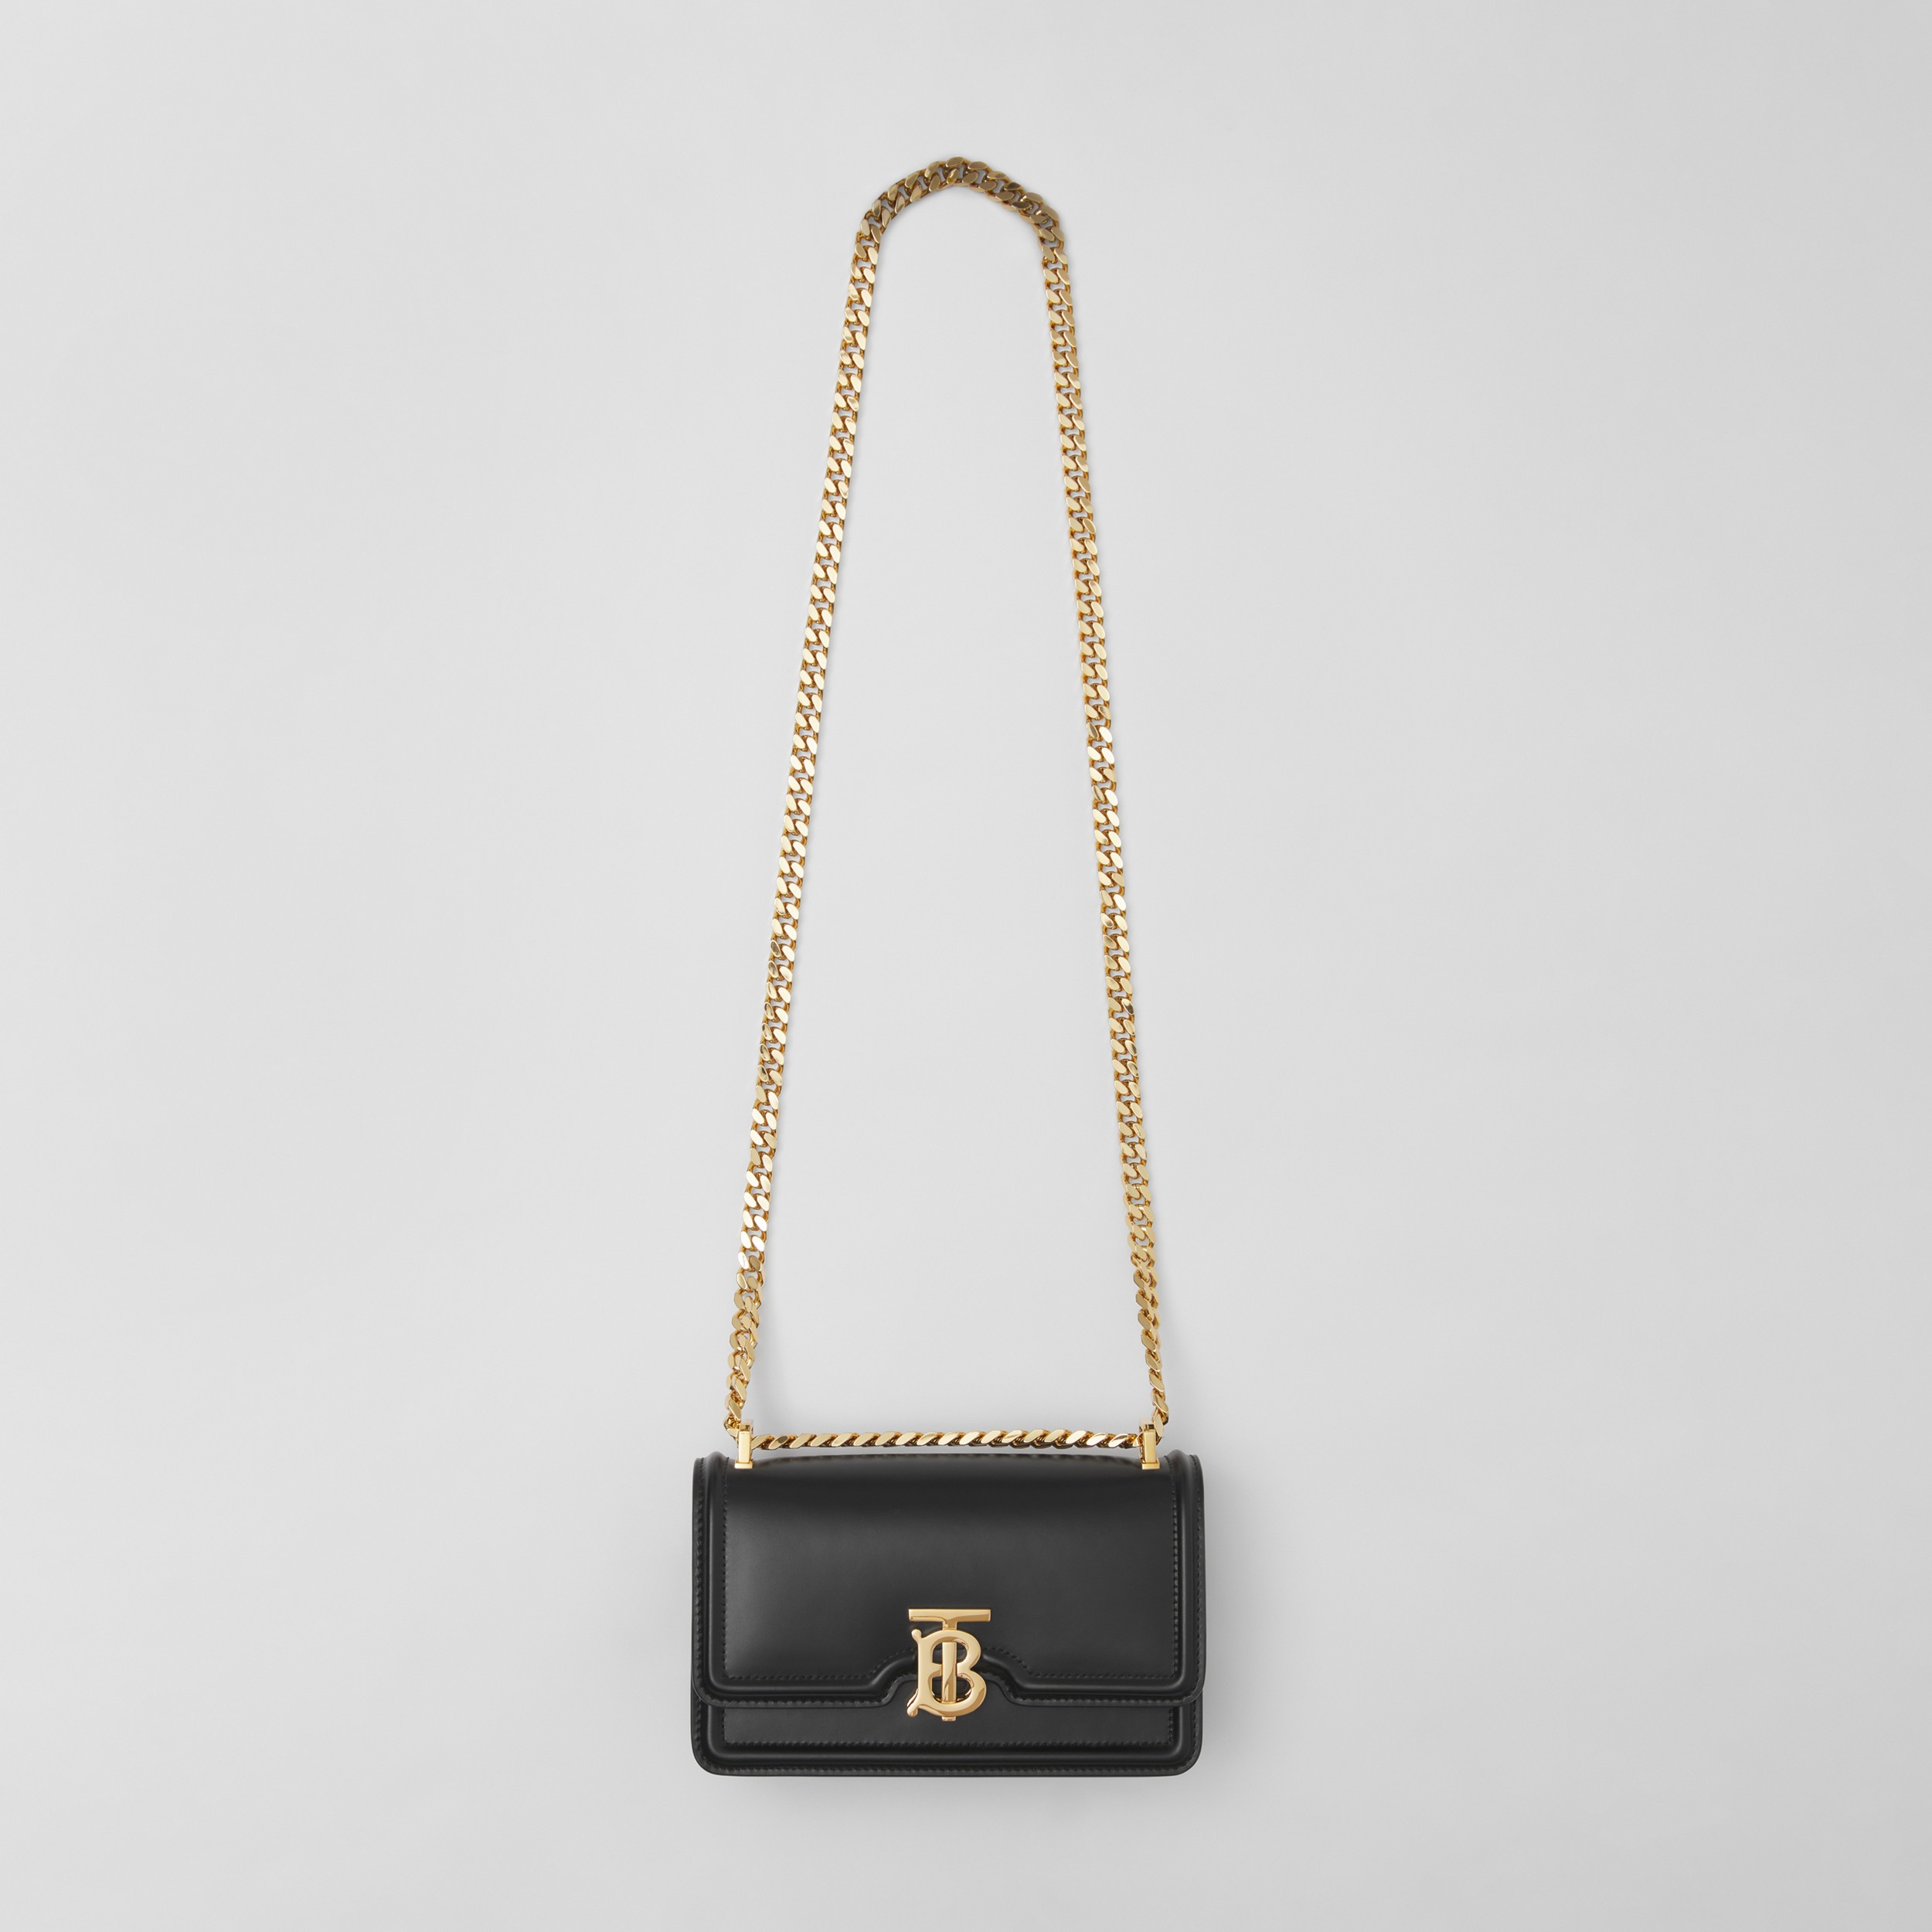 Mini sac TB en cuir avec chaîne (Noir) - Femme | Site officiel Burberry® - 4